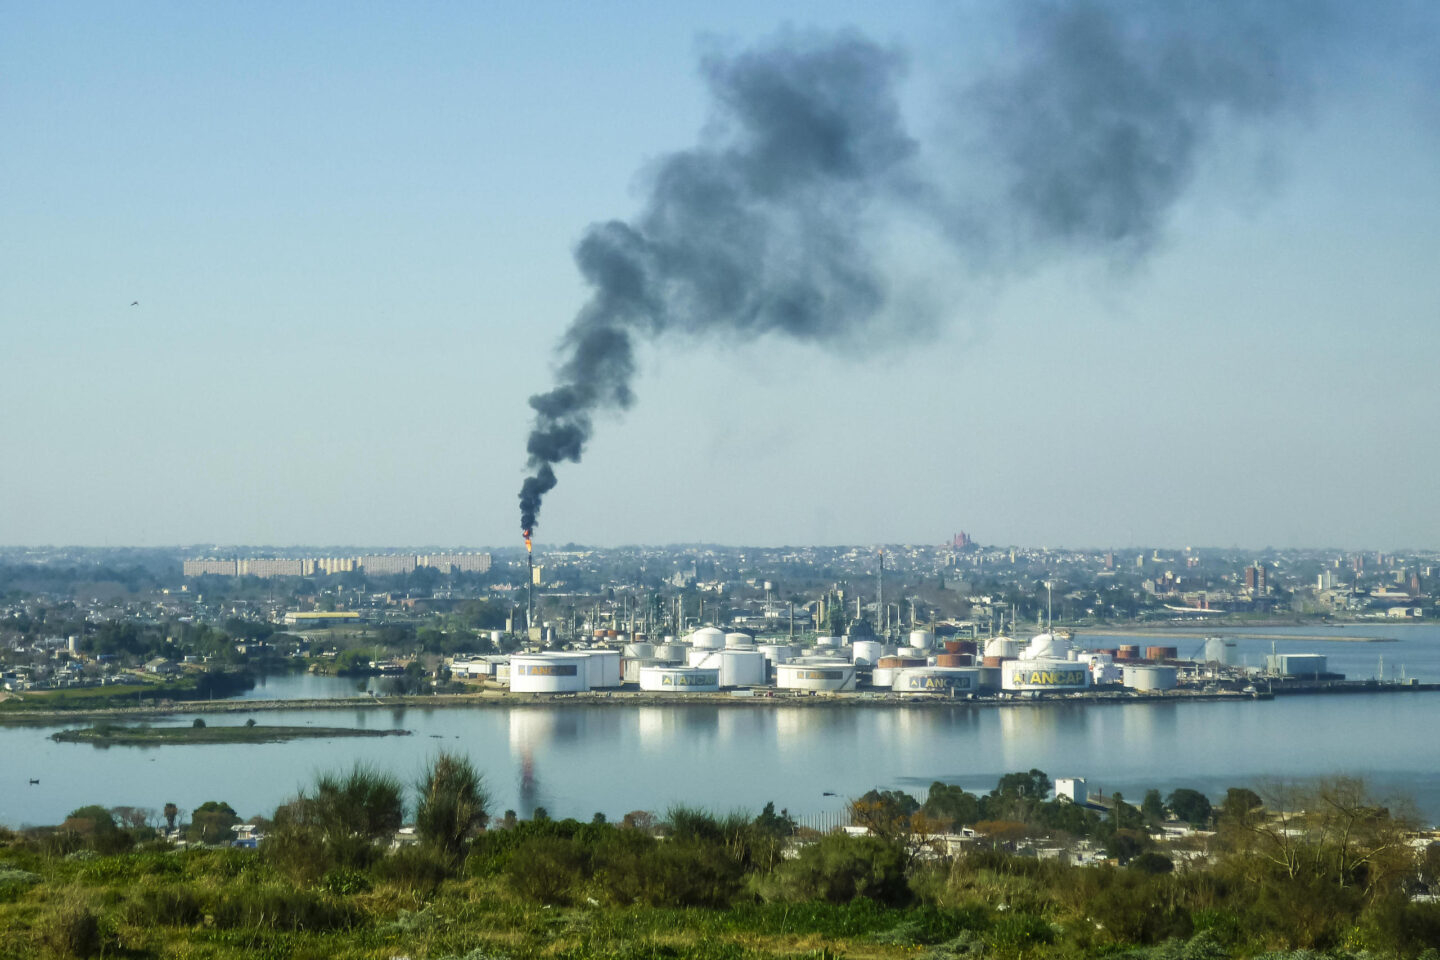 Vista aérea de Montevideo con la Refinería La Teja, la única refinería de petróleo de Uruguay 